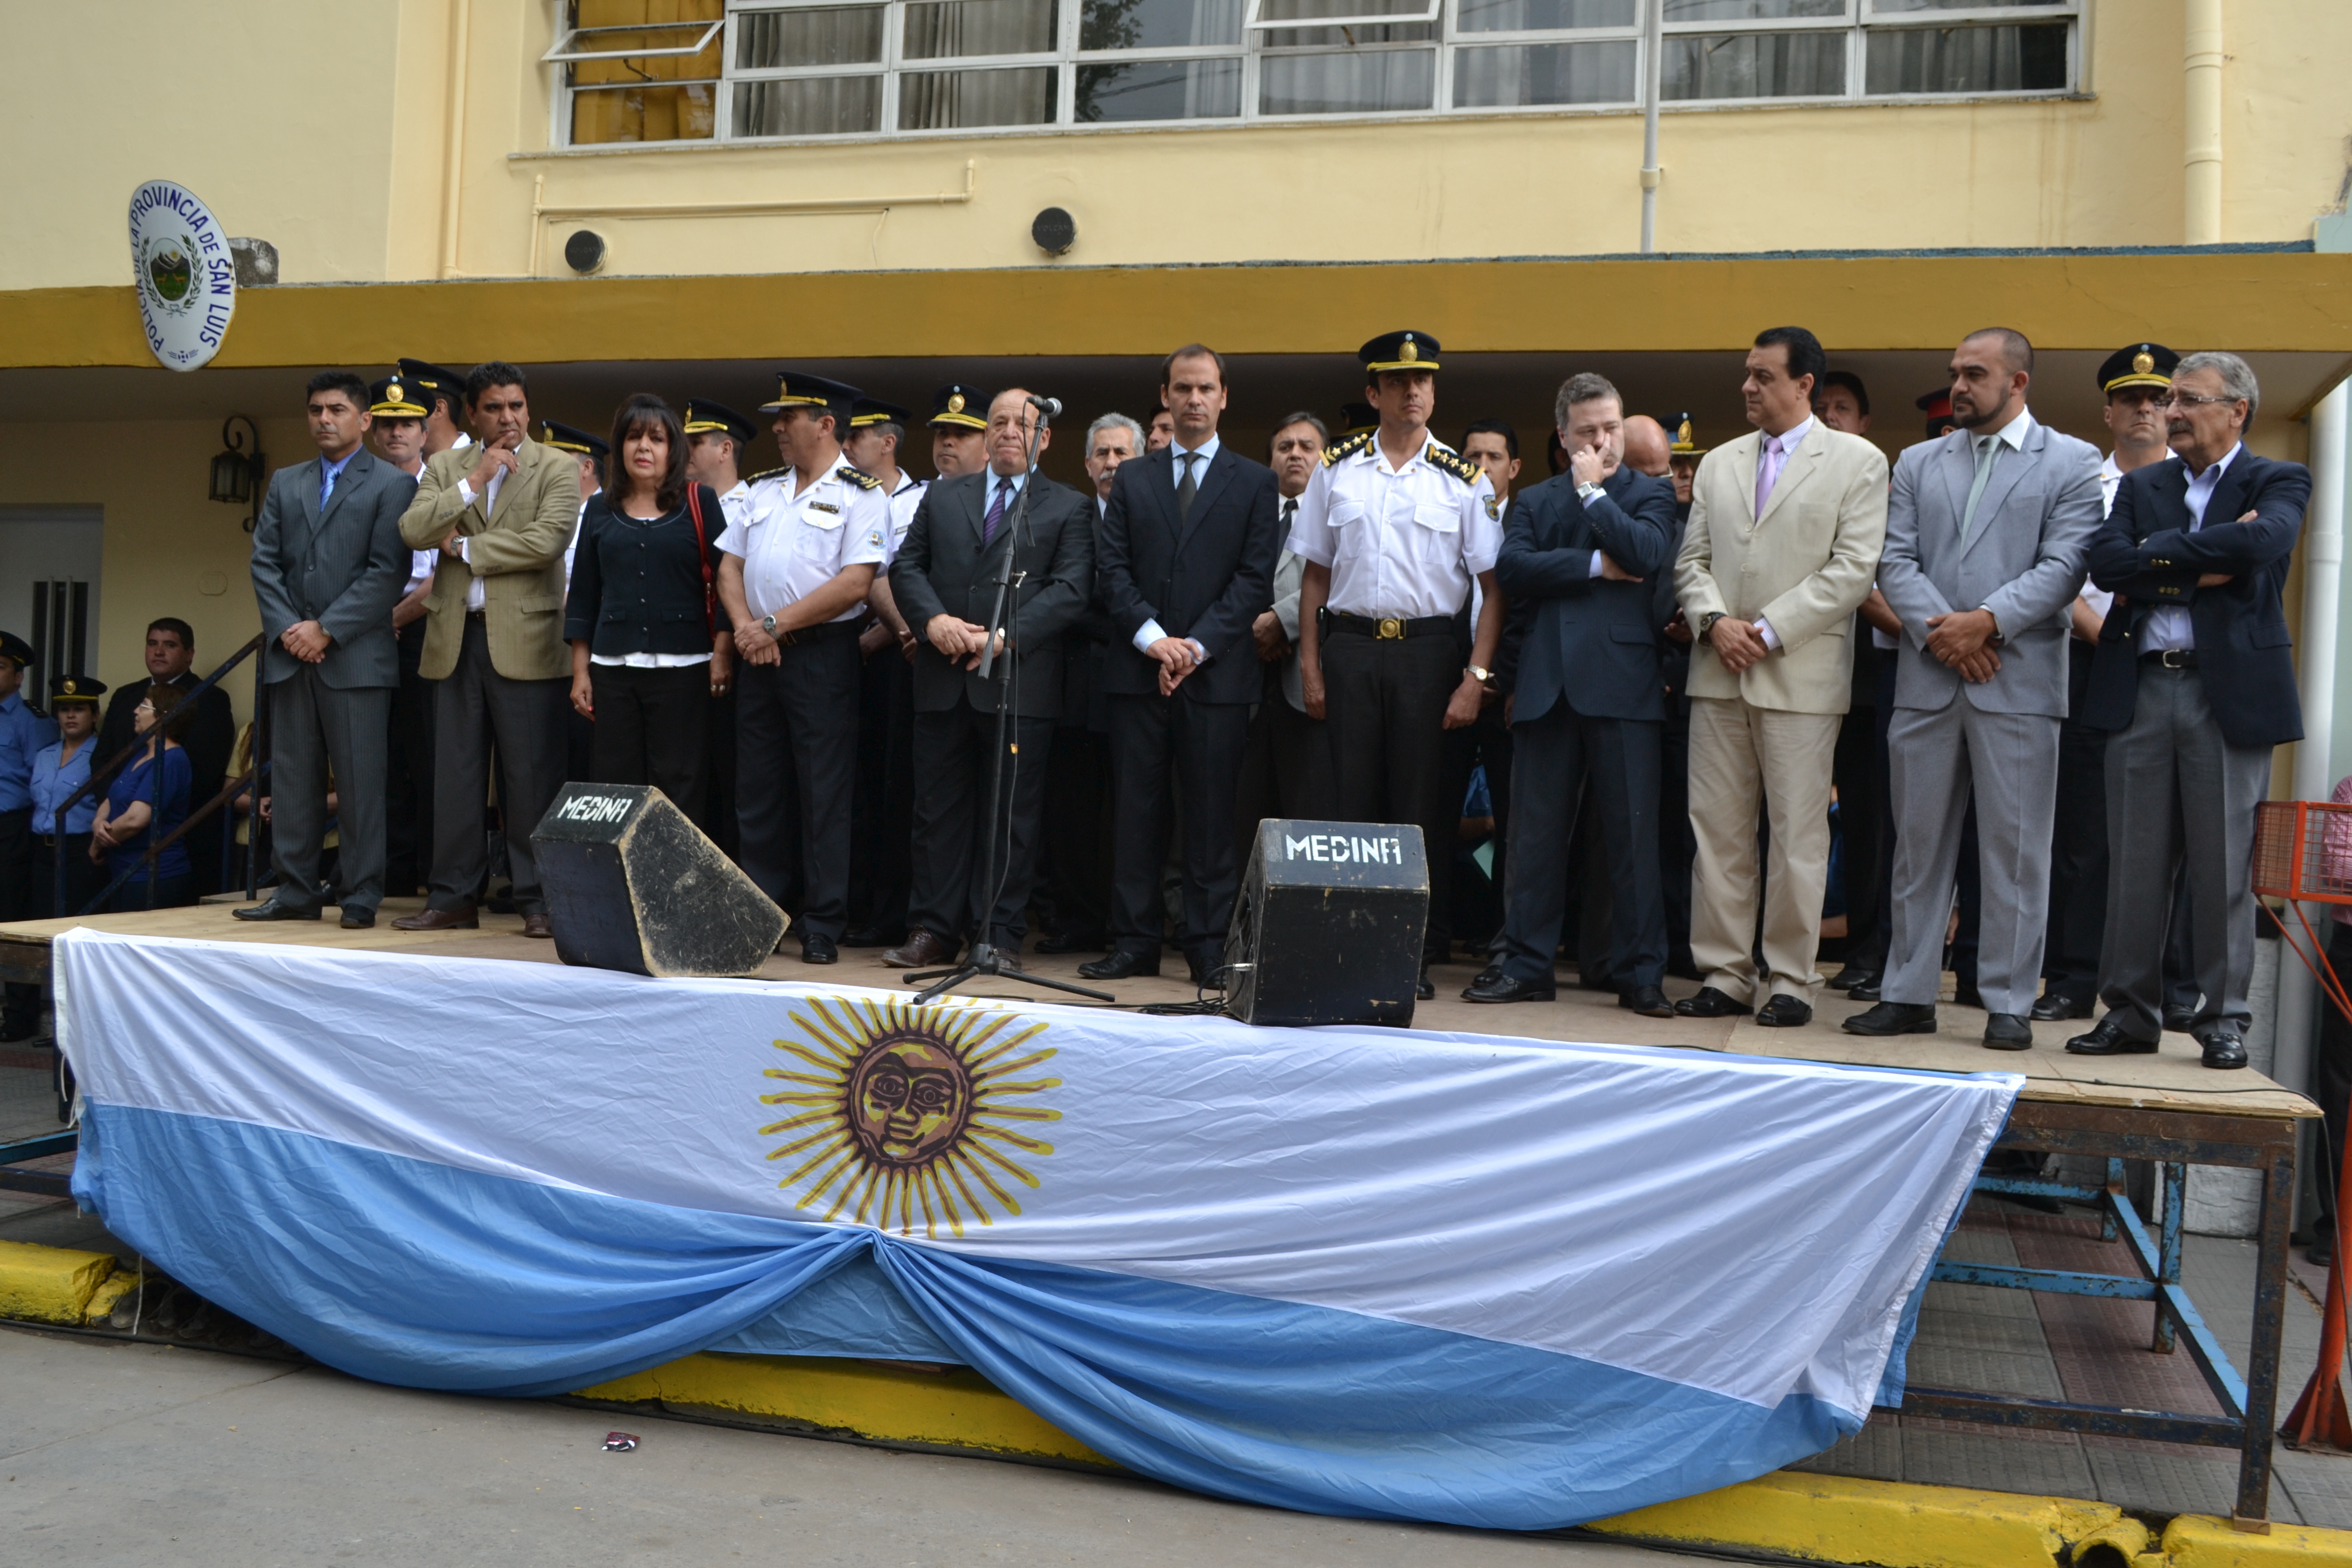 El acto fue presidido por el ministro de Relaciones Institucionales y Seguridad, Martín Olivero